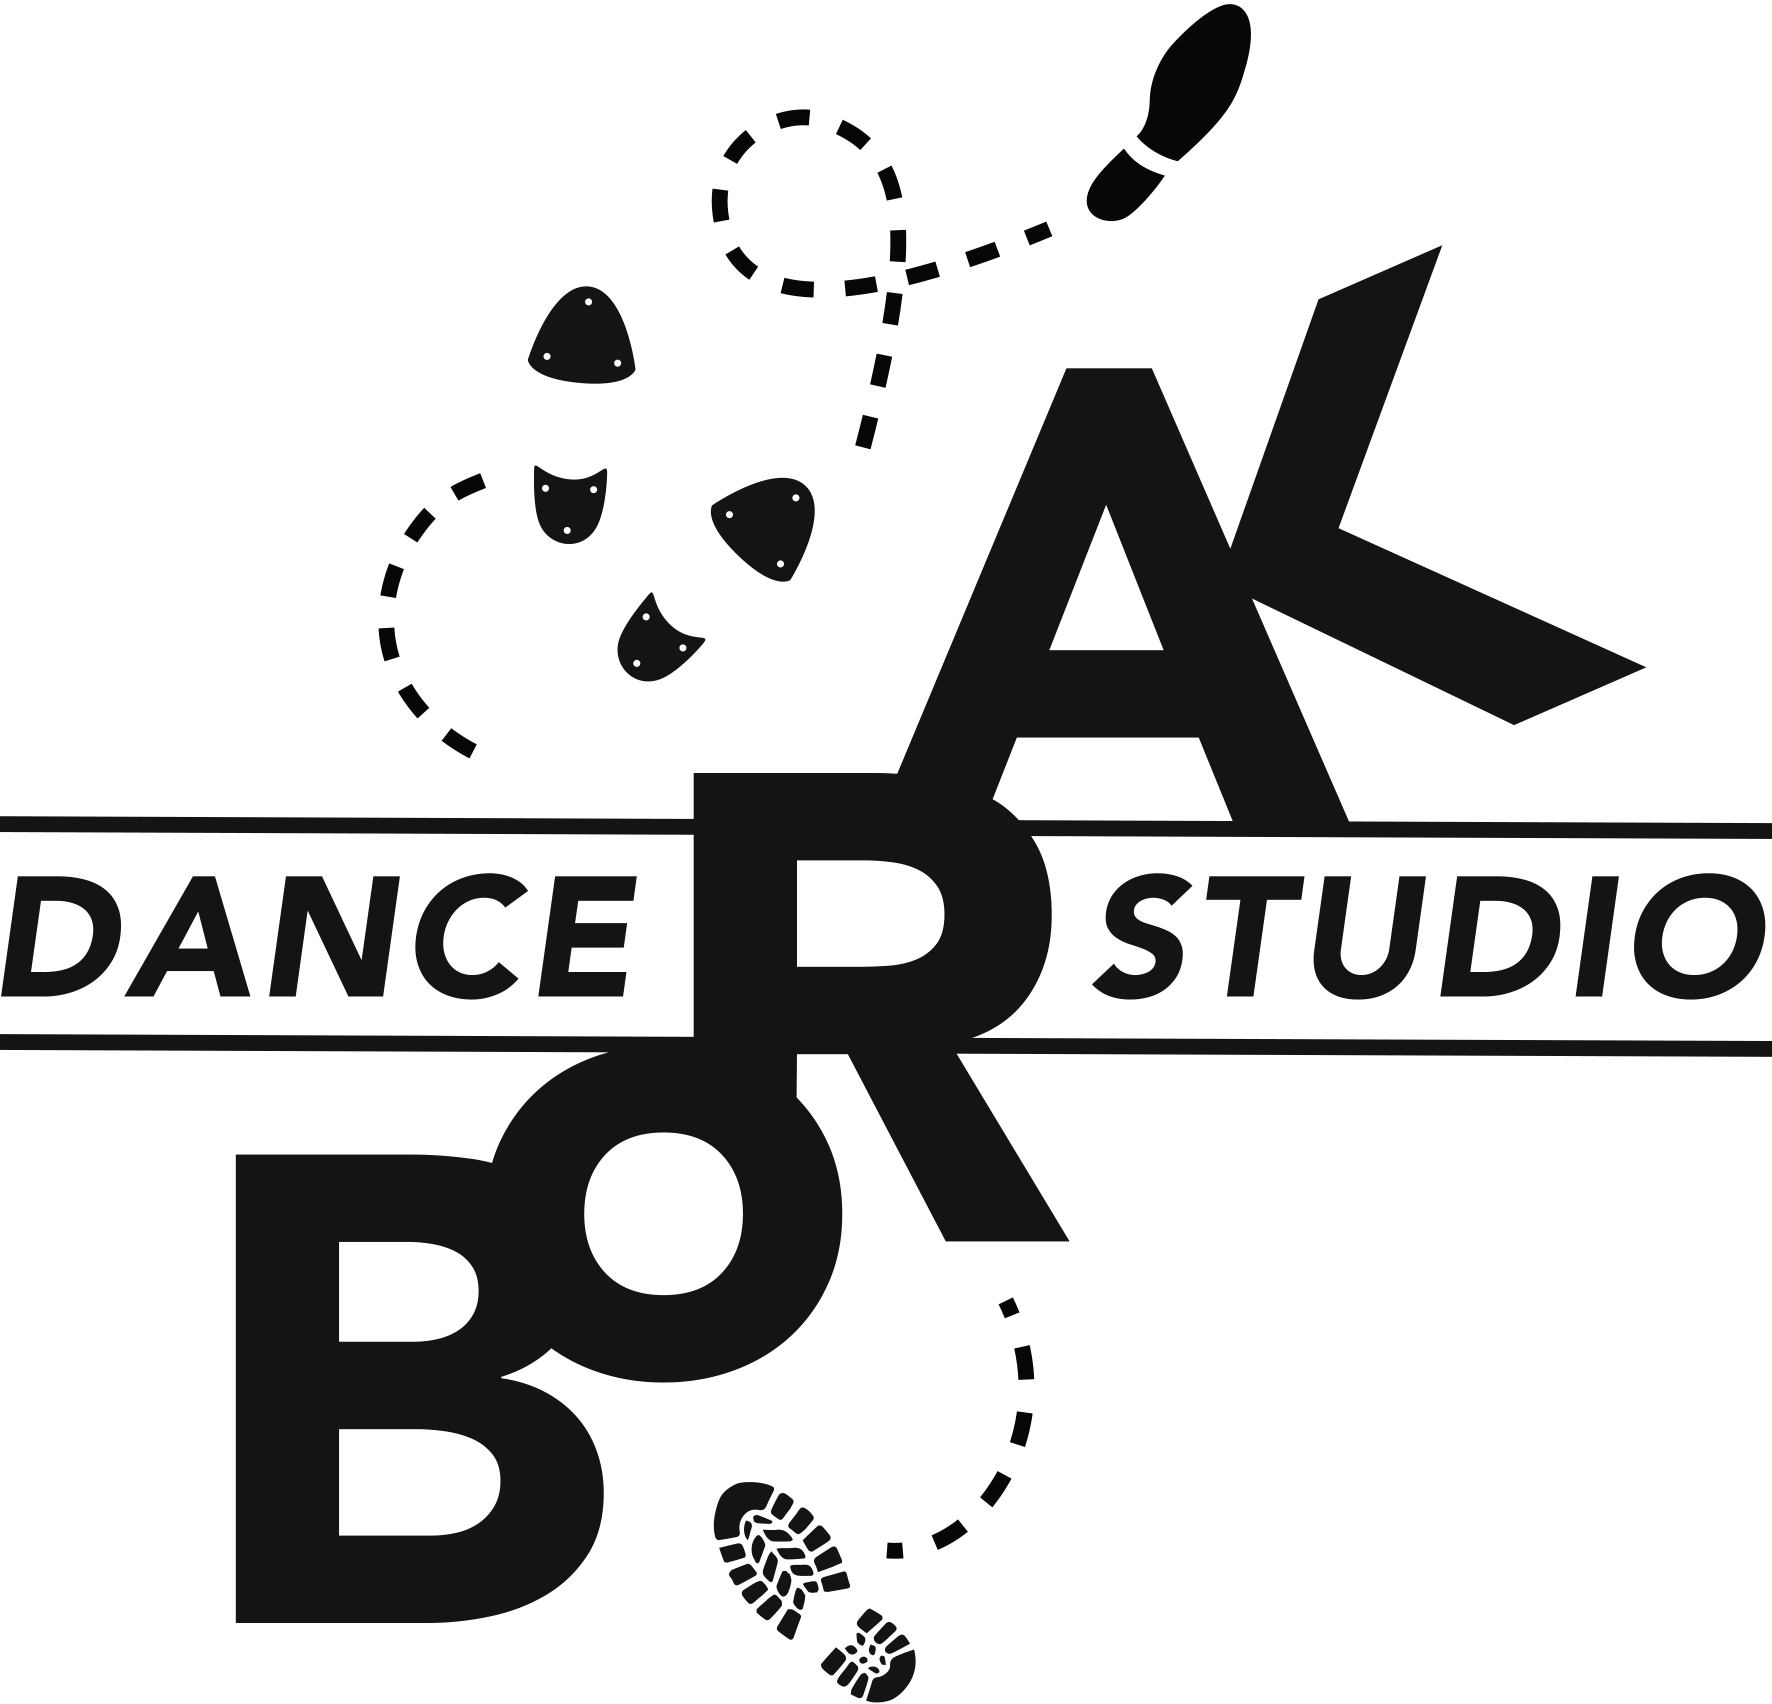 DanceStudio Borak